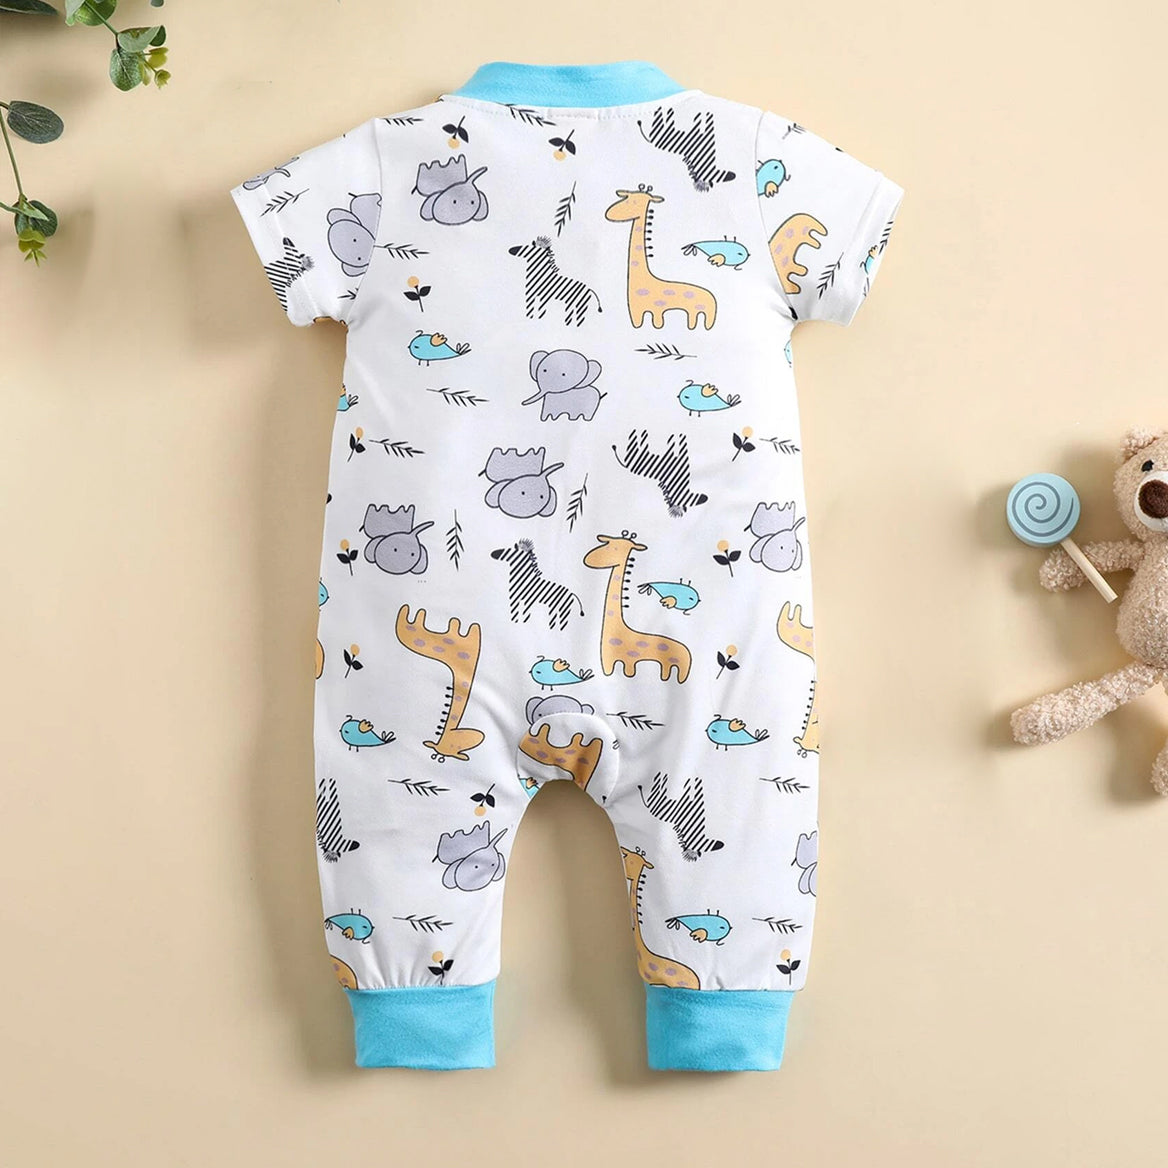 Cute Animal Printed Short Sleeve Baby Jumpsuit